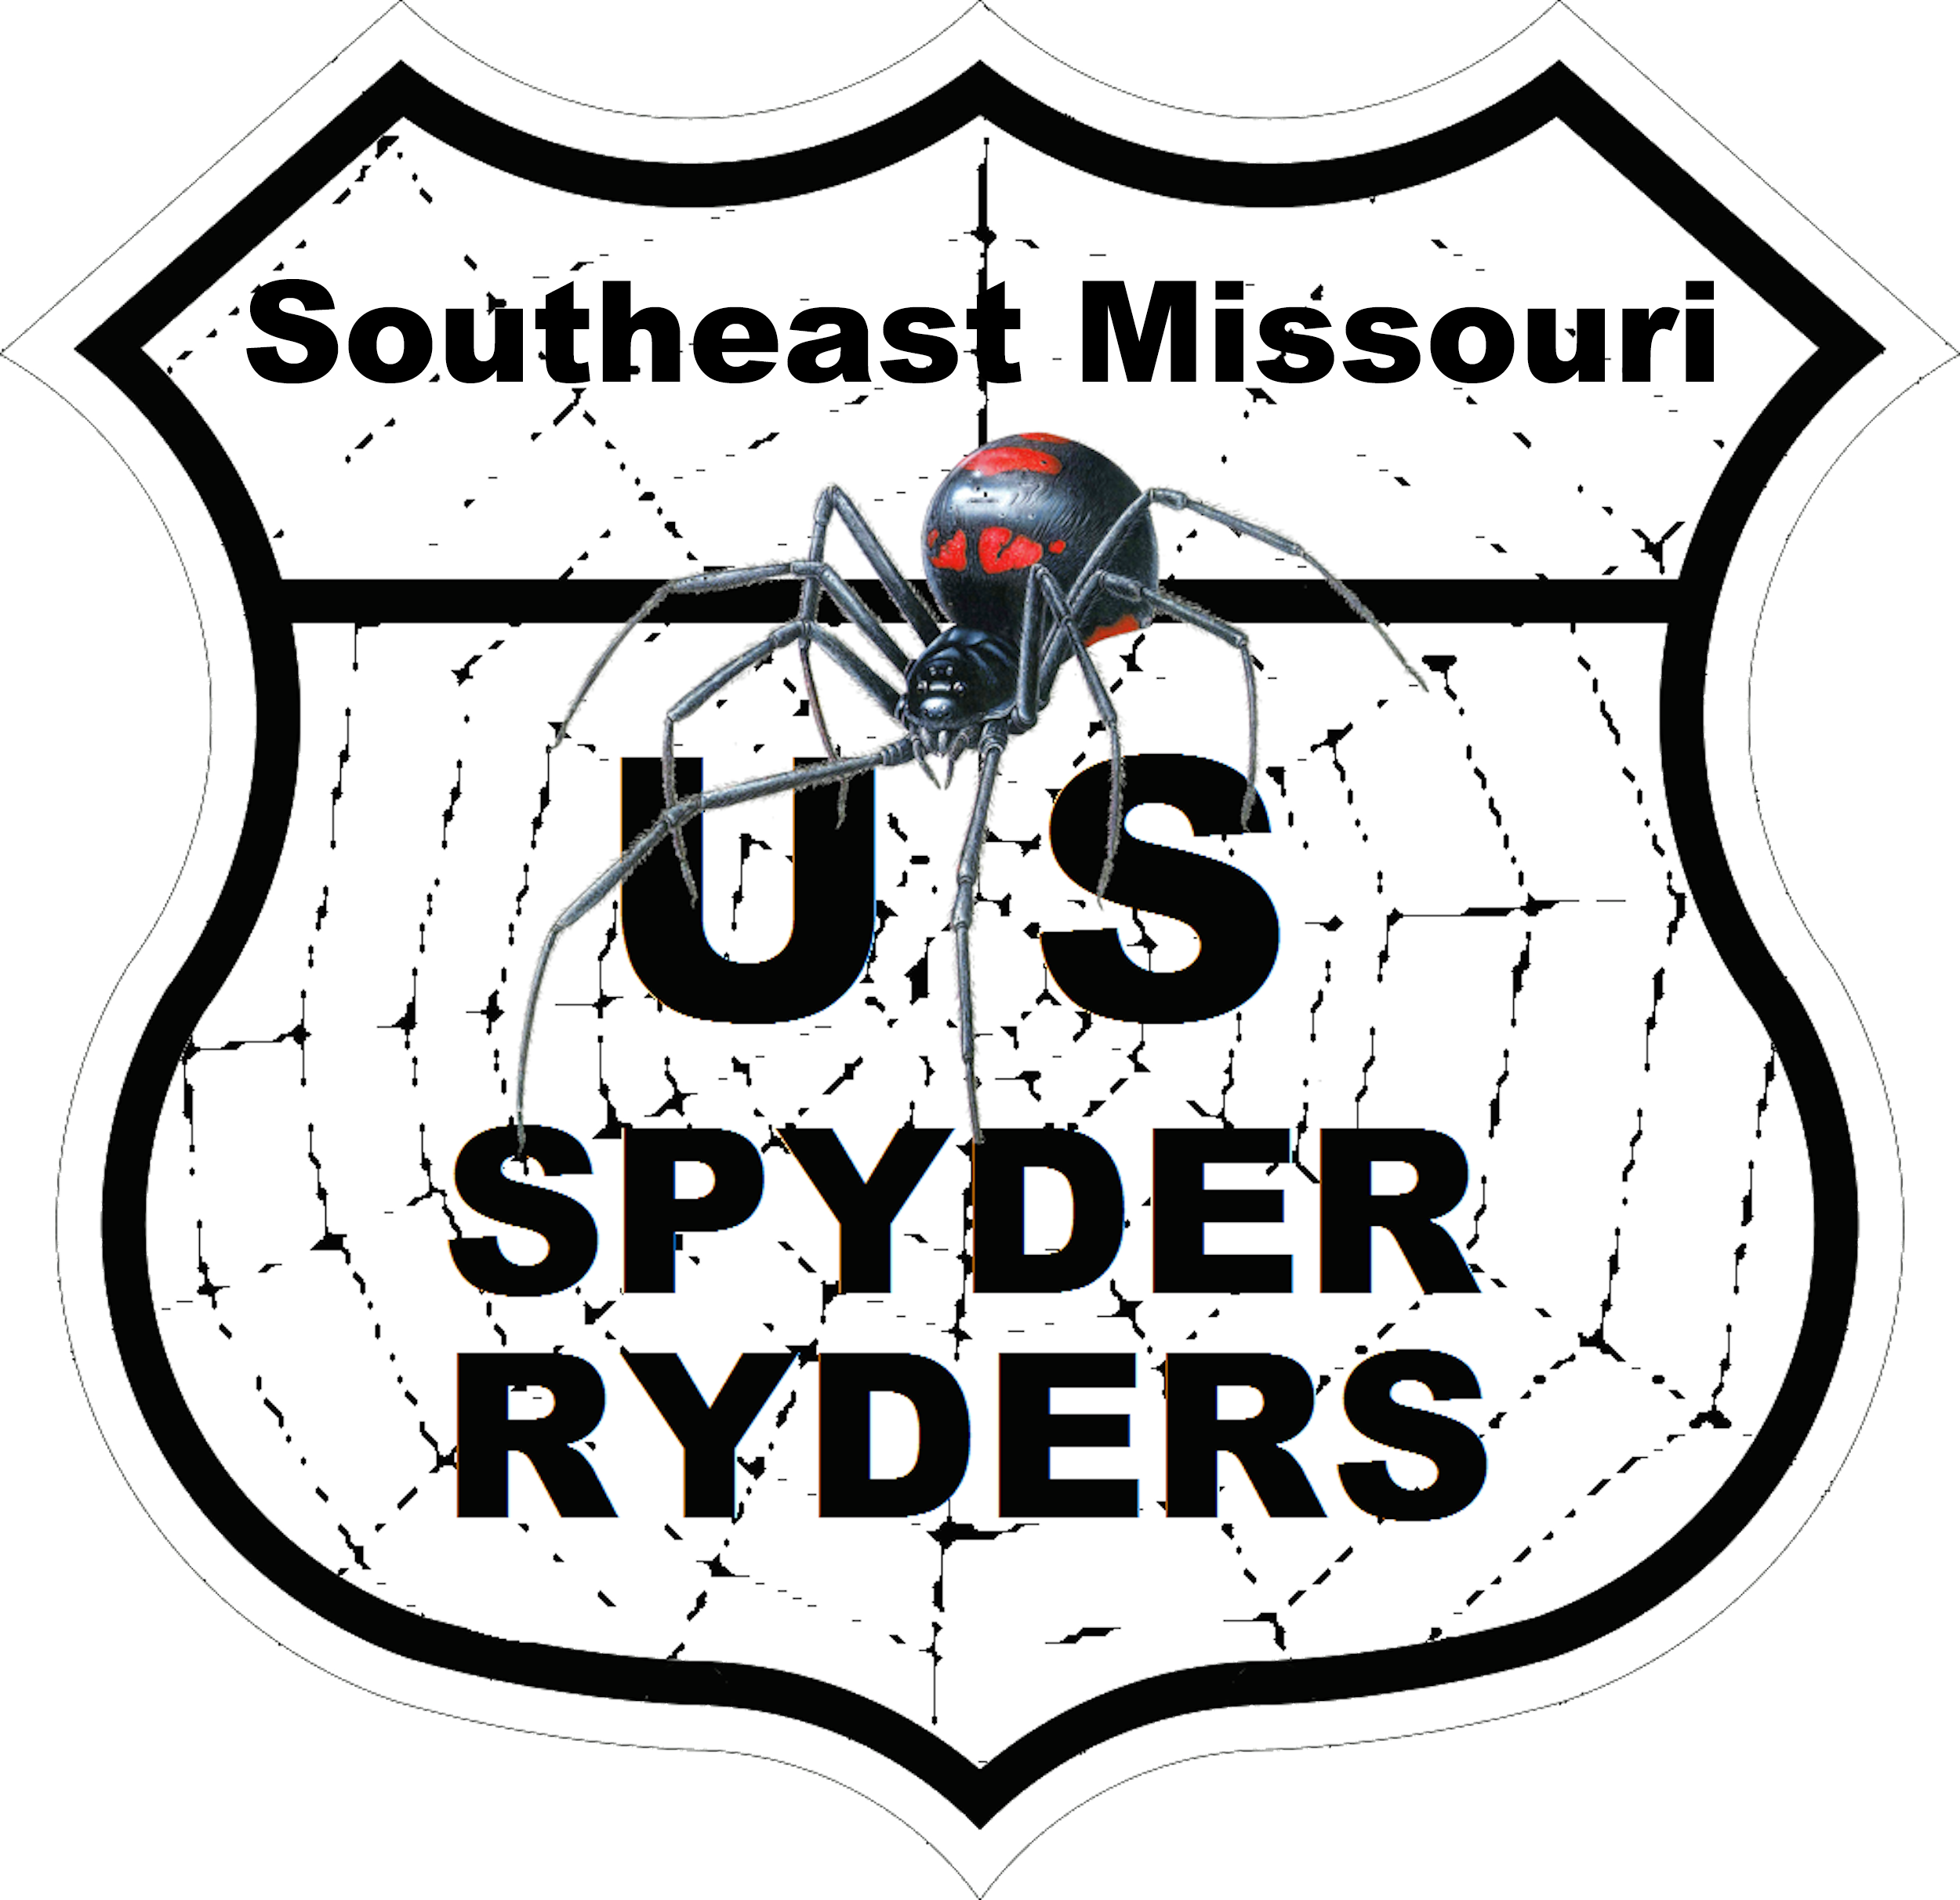 US_Spyder_Ryder_SE_Missouri.png